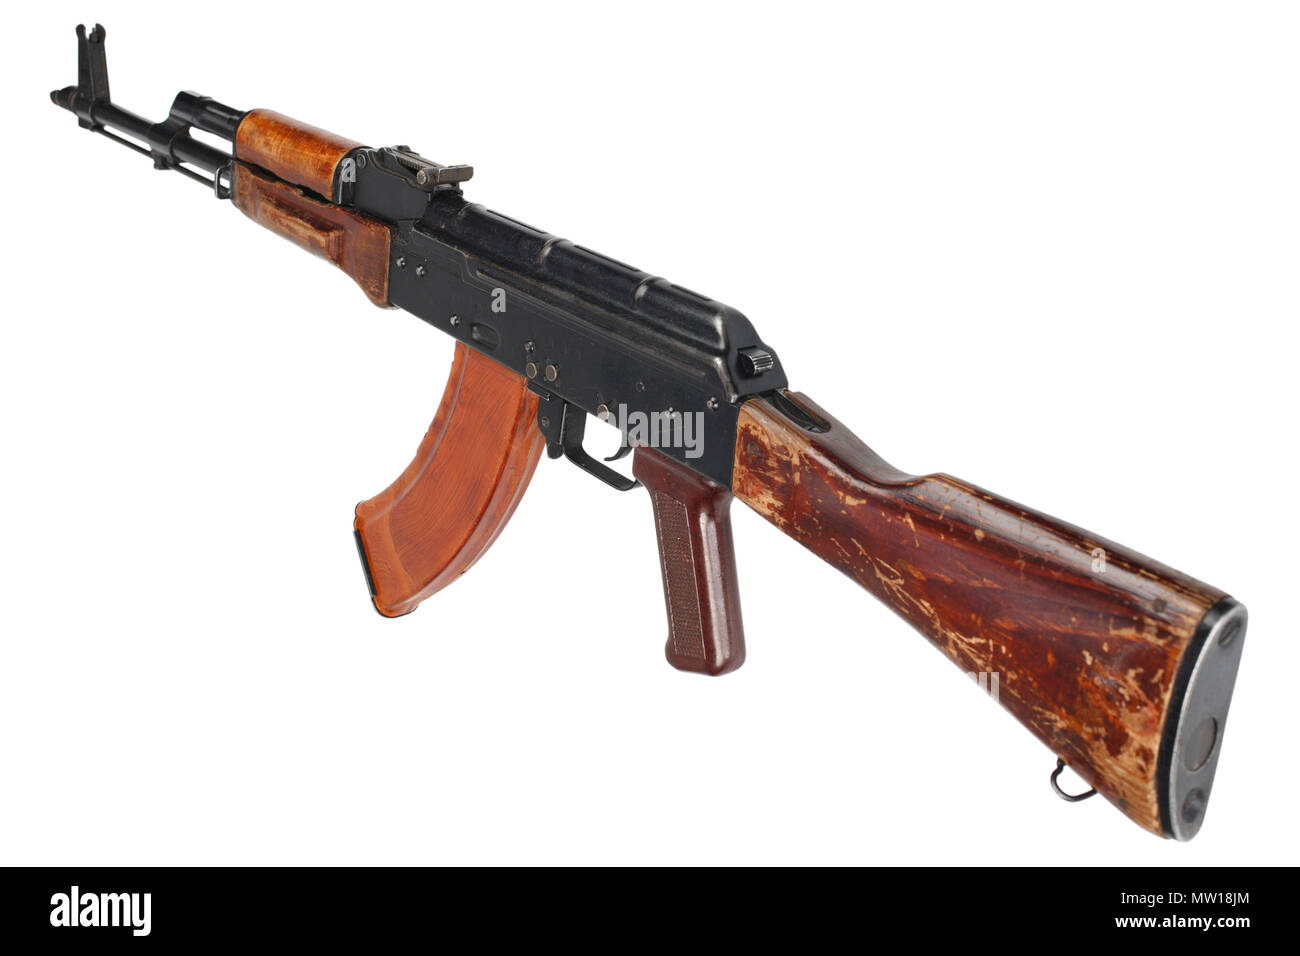 AK - 47 (AKM) assault rifle Stock Photo